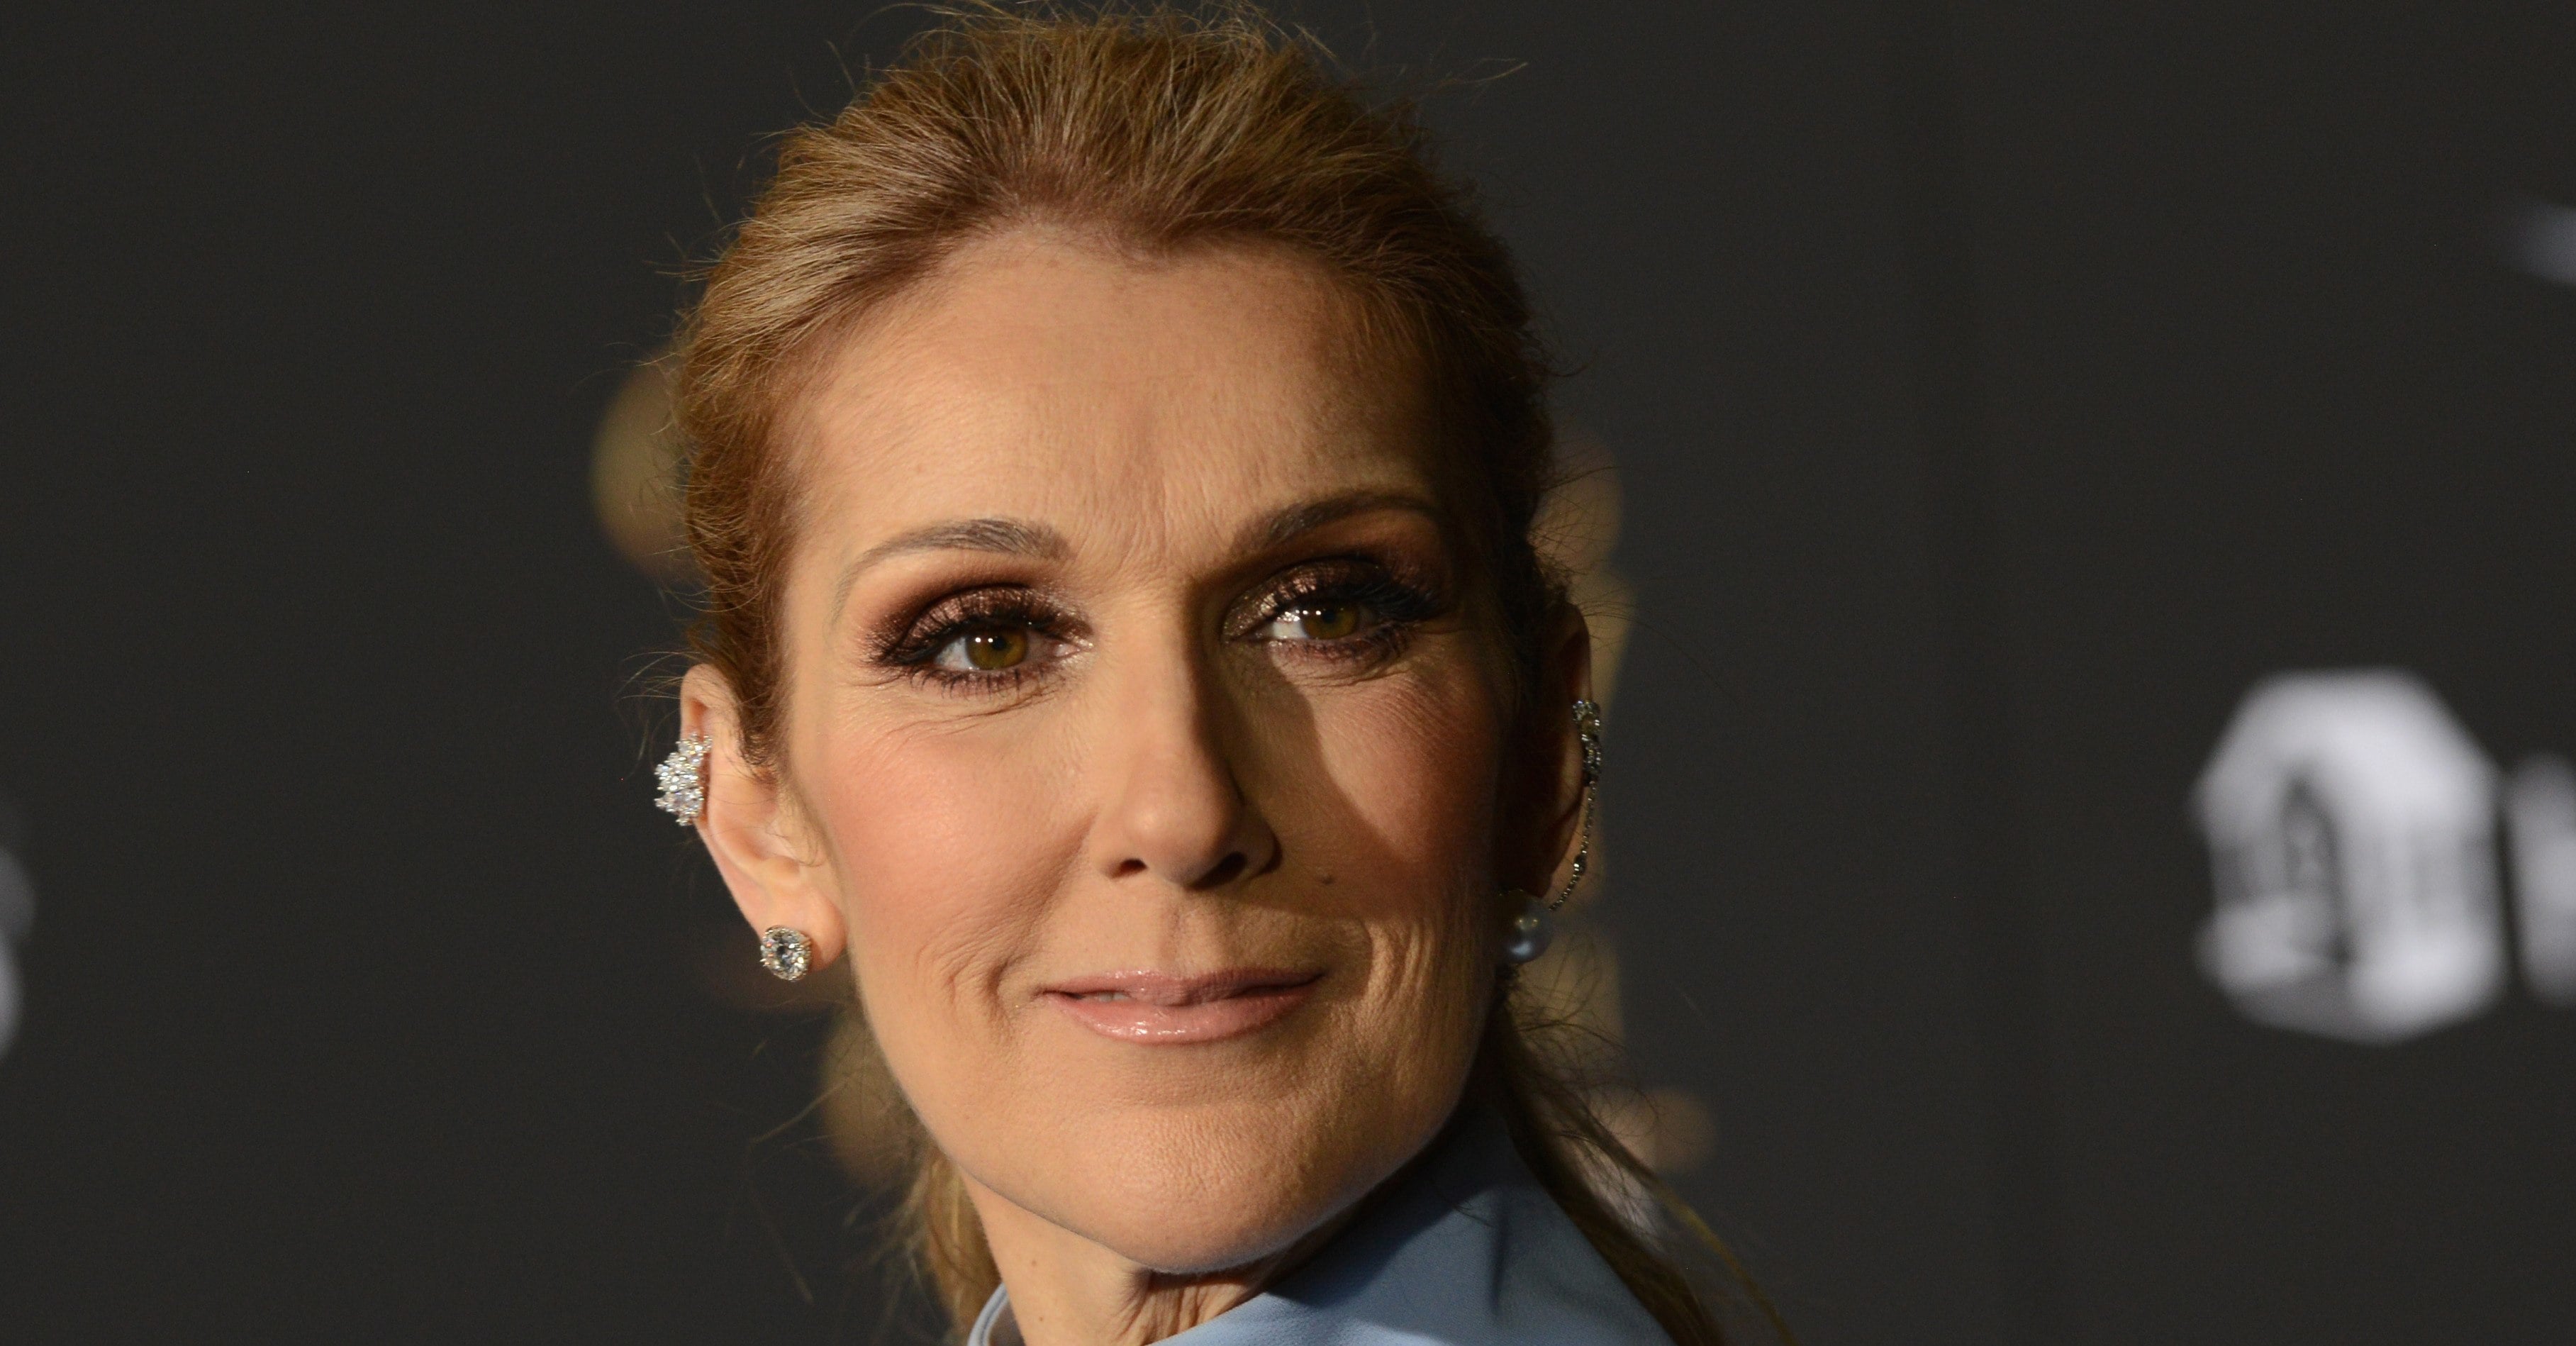 Celine Dion Quotes About Dating After Husband's Death | POPSUGAR Celebrity